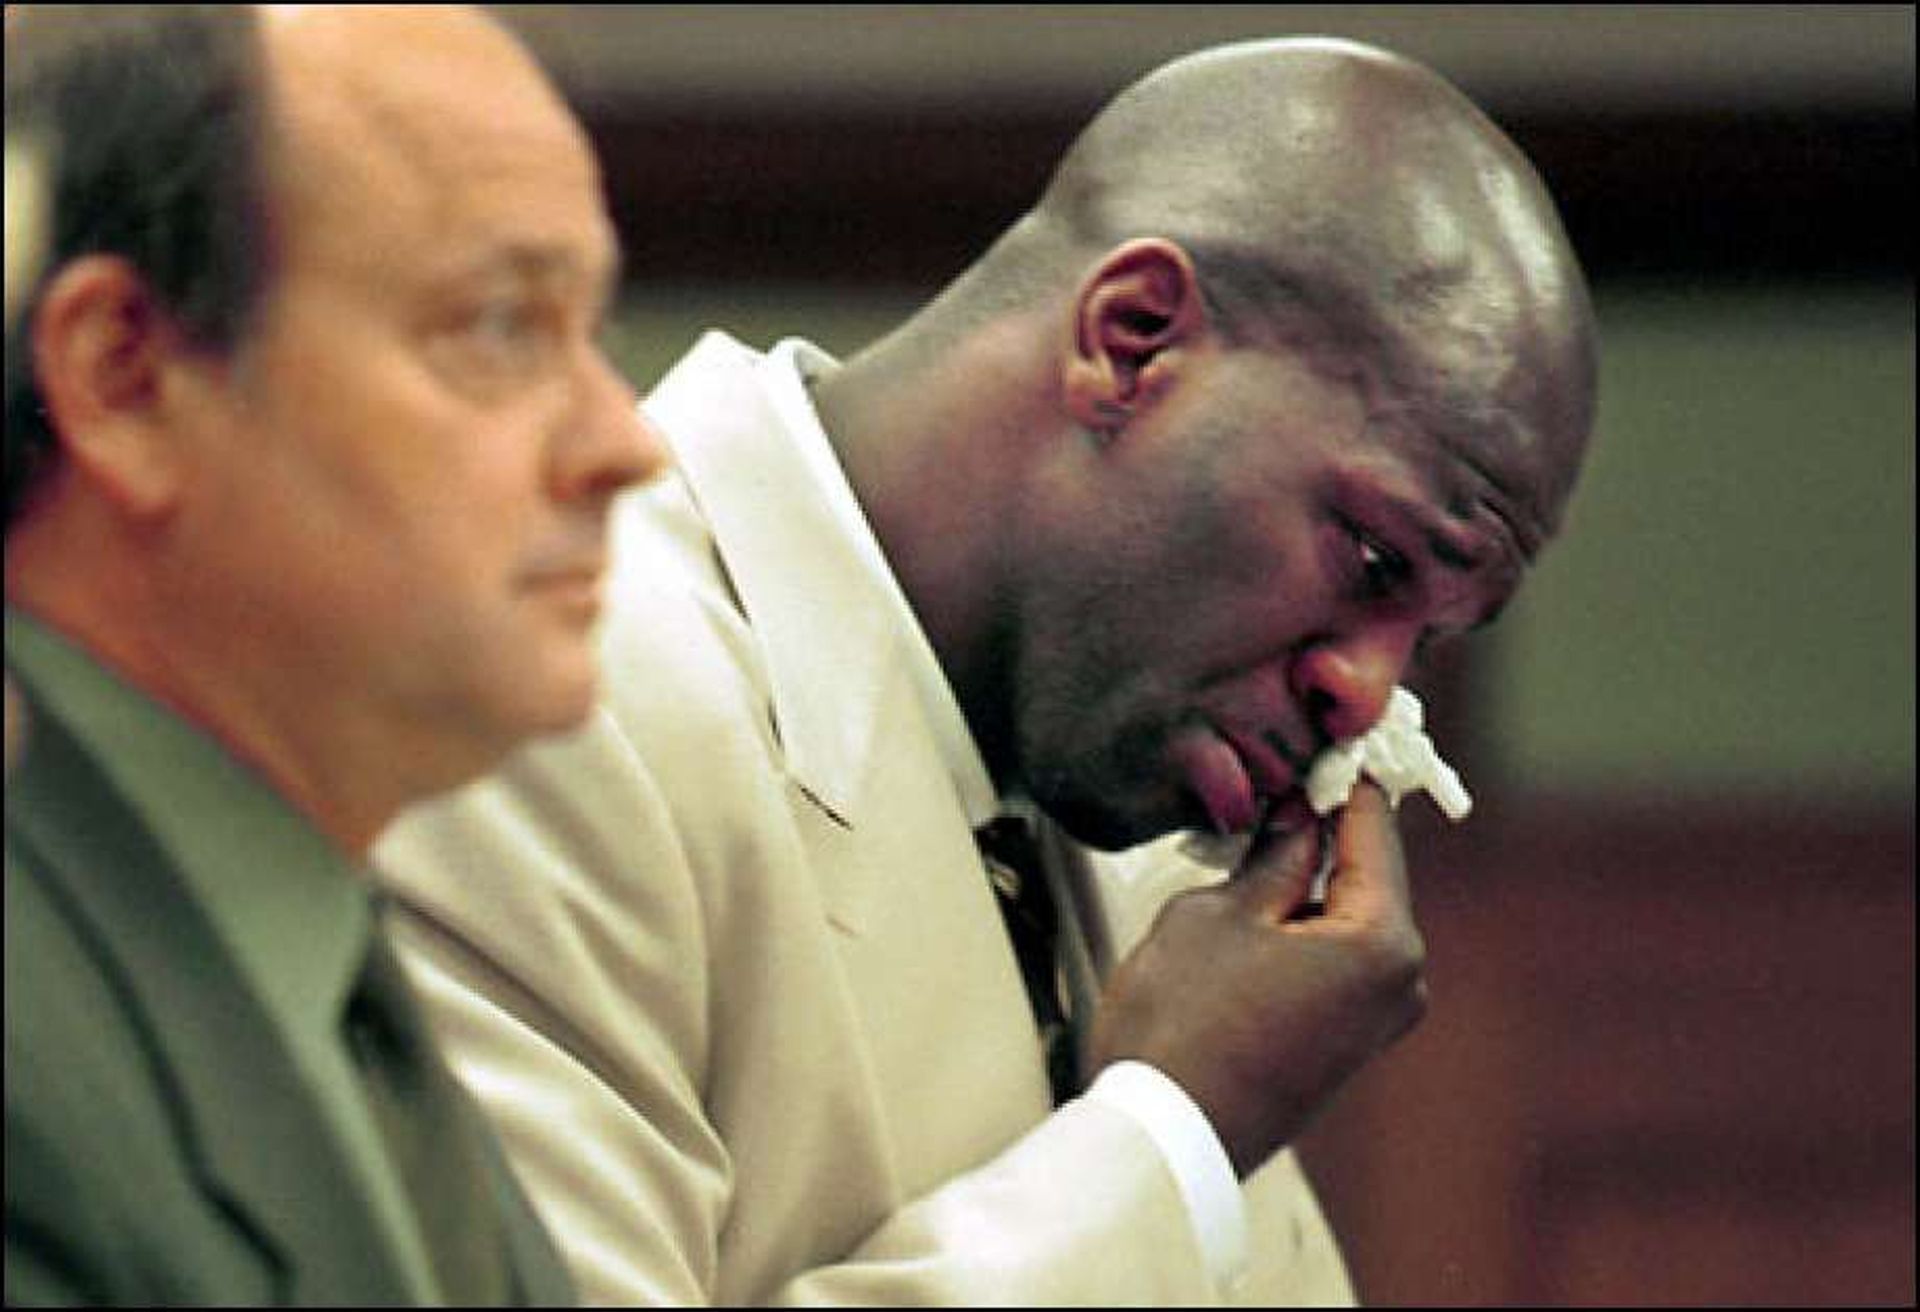 Рубен Патерсън - сериозно име в историята на НБА, записал 8 сезона в лигата (1999-2008 г.), включително за Лос Анджелис Лейкърс и Сиатъл Суперсоникс. През 2001 г. е осъден на година затвор заради опит към склоняване към секс на жената, която се грижи за децата му. Оказва се, че това не е първото му криминално проявление от такъв тип, а и излежава 8 месеца от присъдата. Принуден е да се регистрира като "сексуален агресор" във всеки щат, където пътува да играе след това.